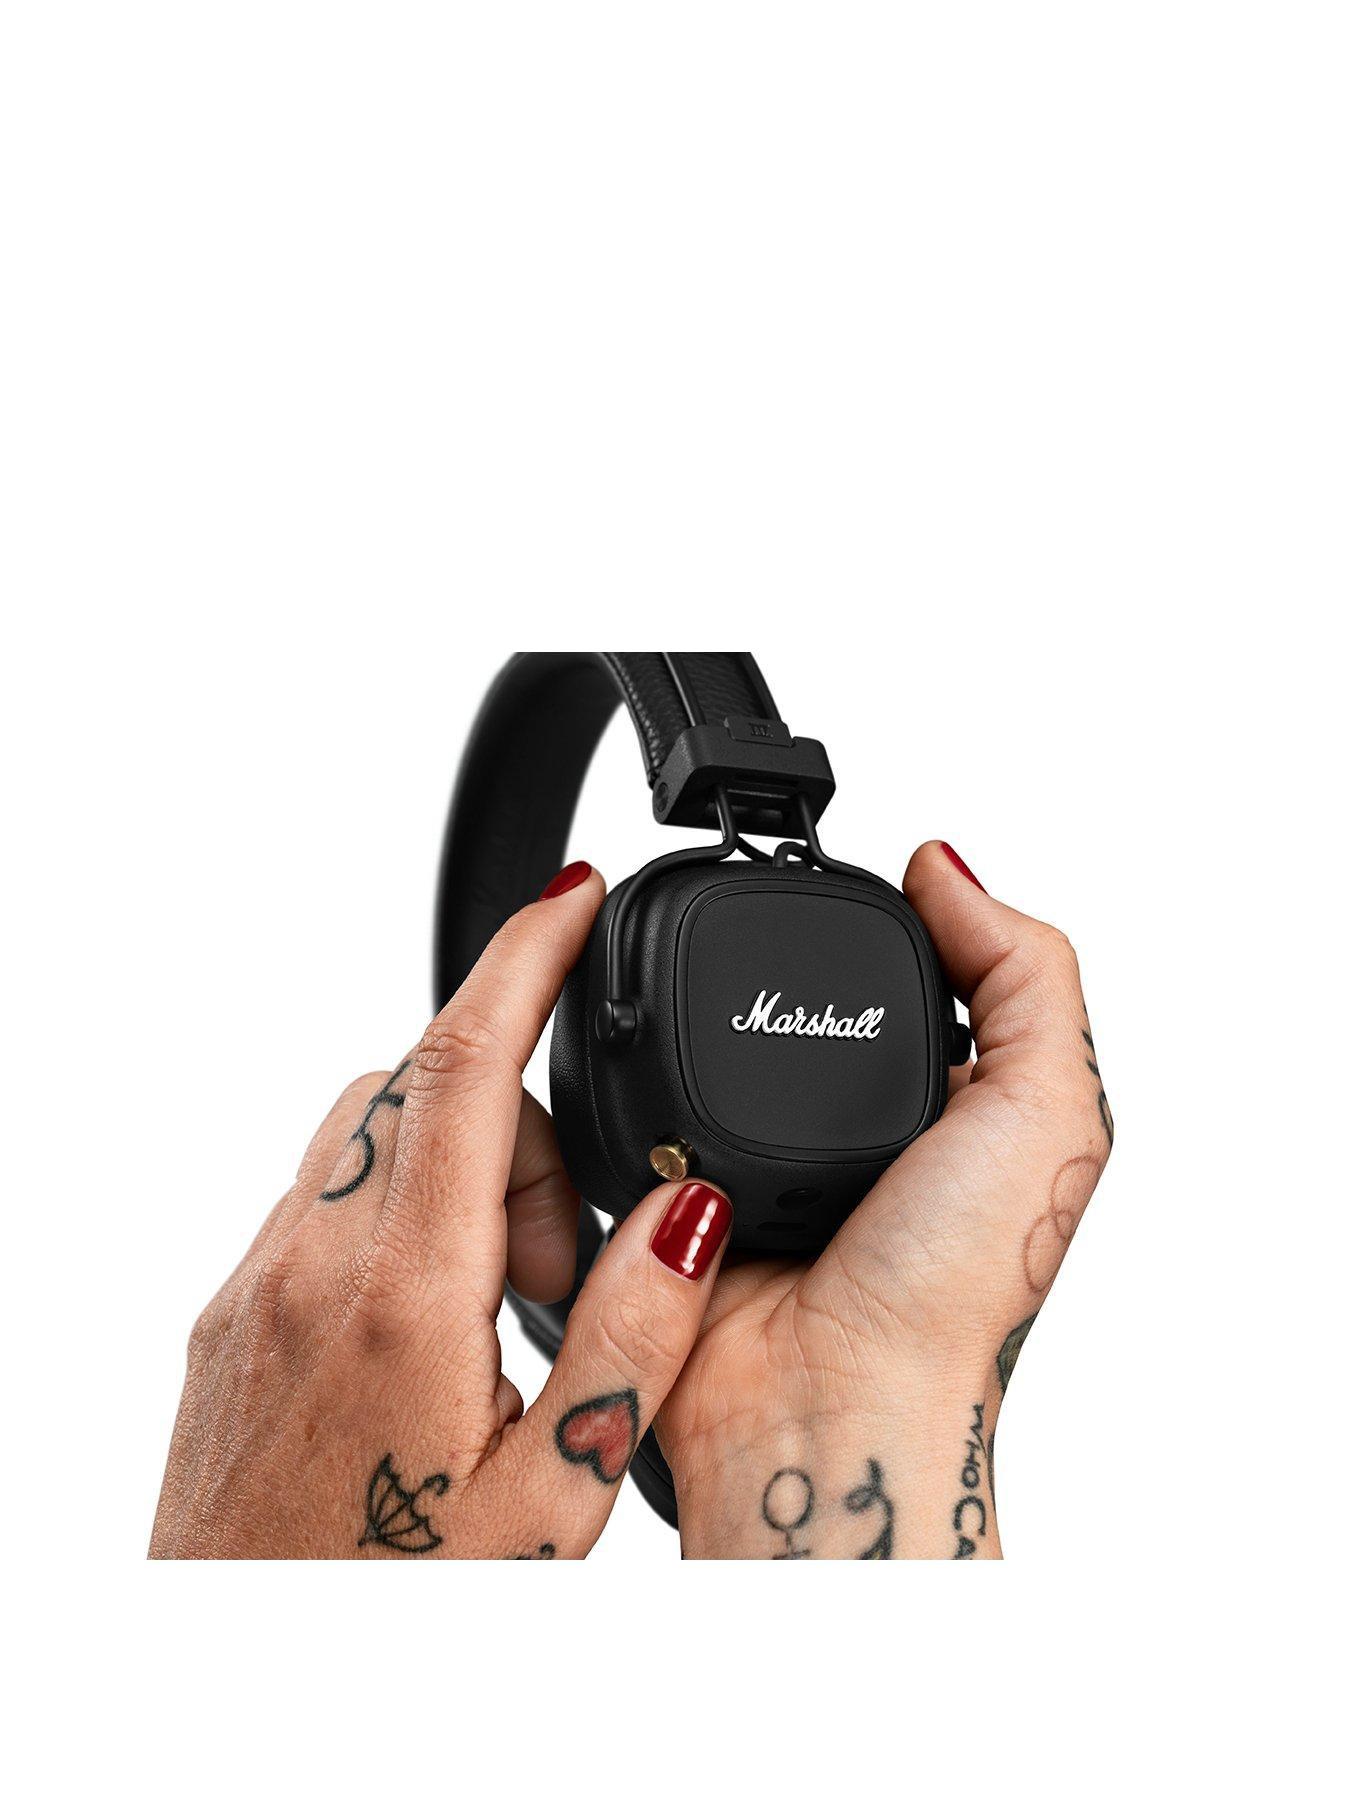 Marshall Major IV Bluetooth Headphones Black